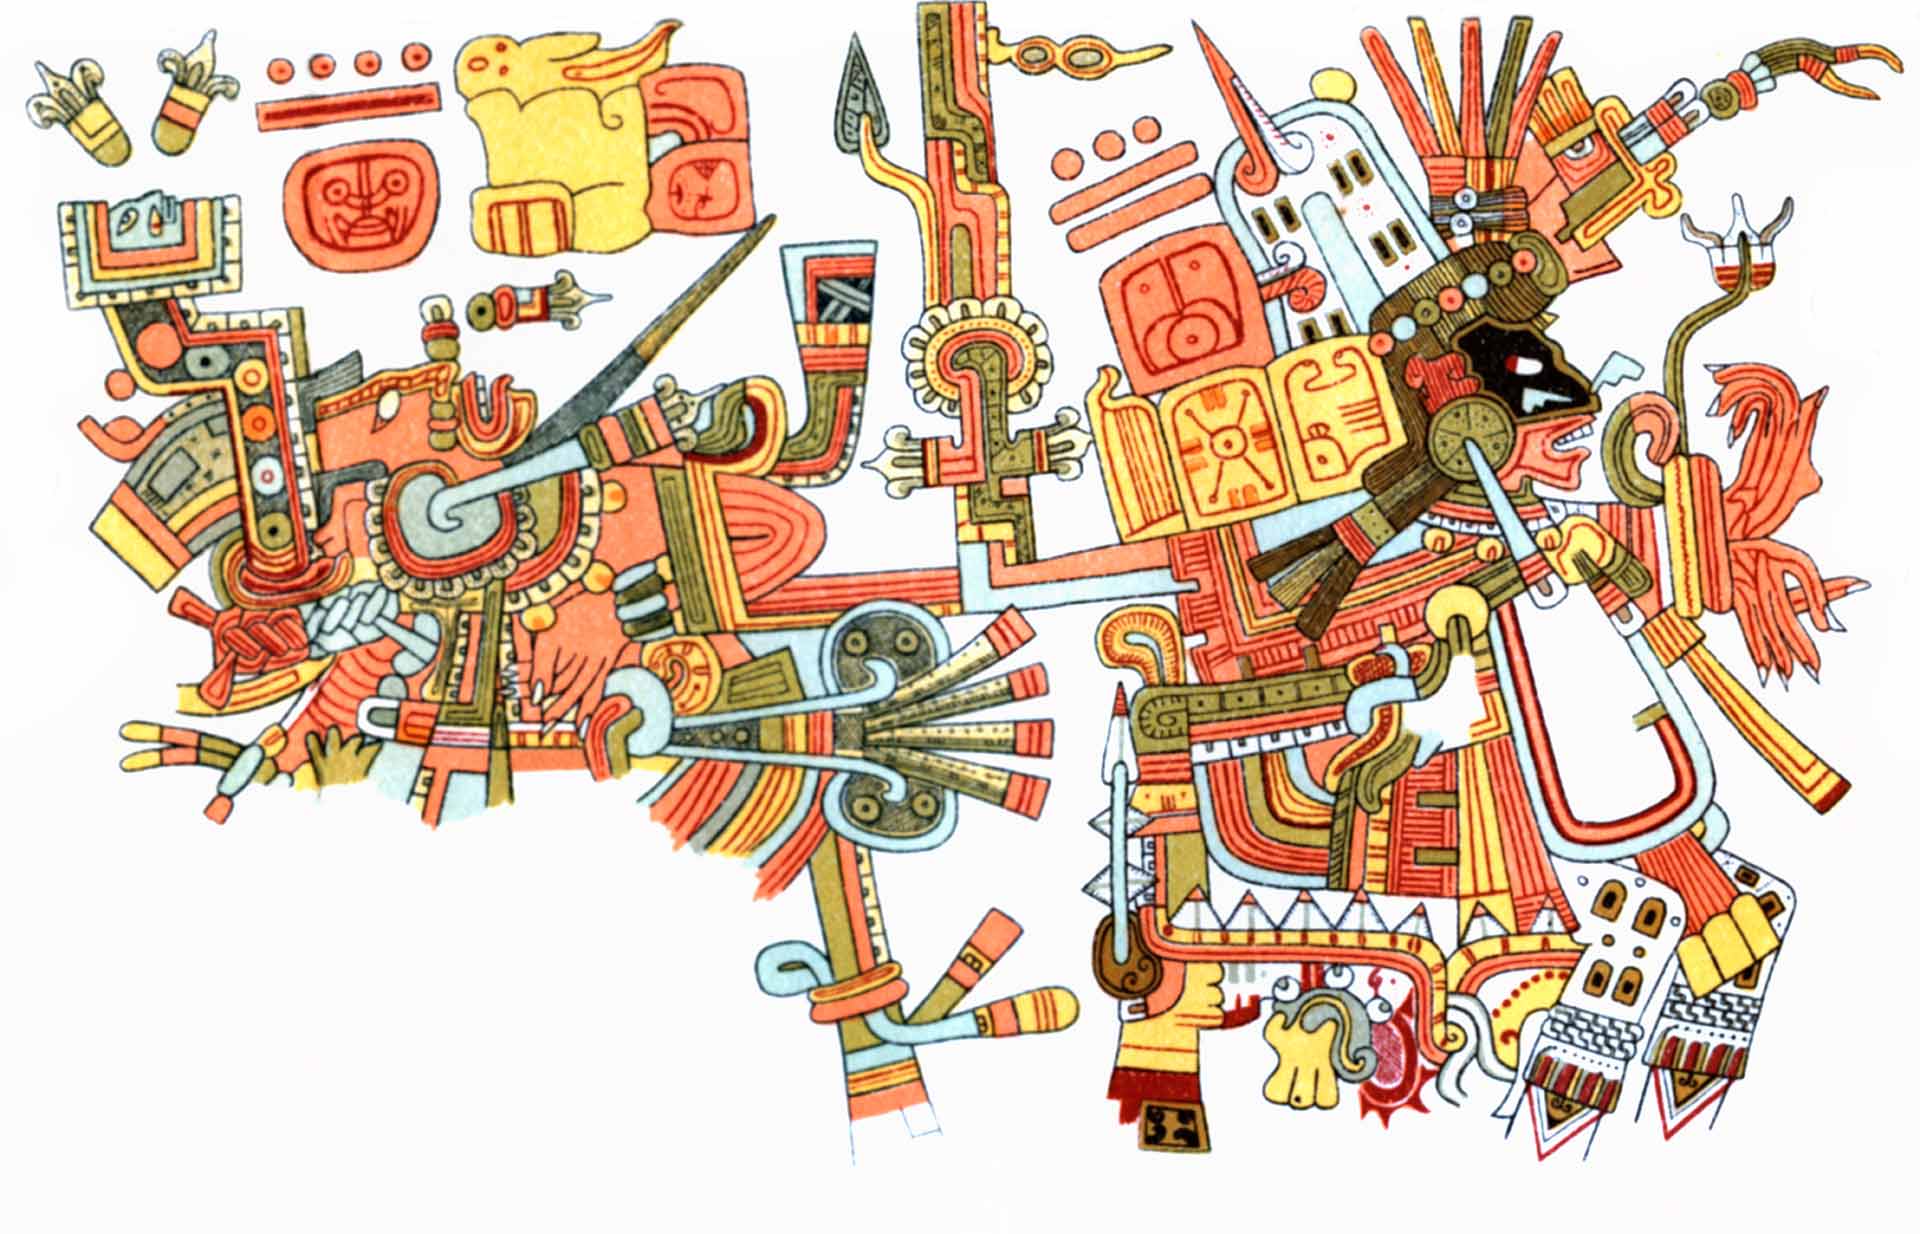 Image de fond d'une illustration maya